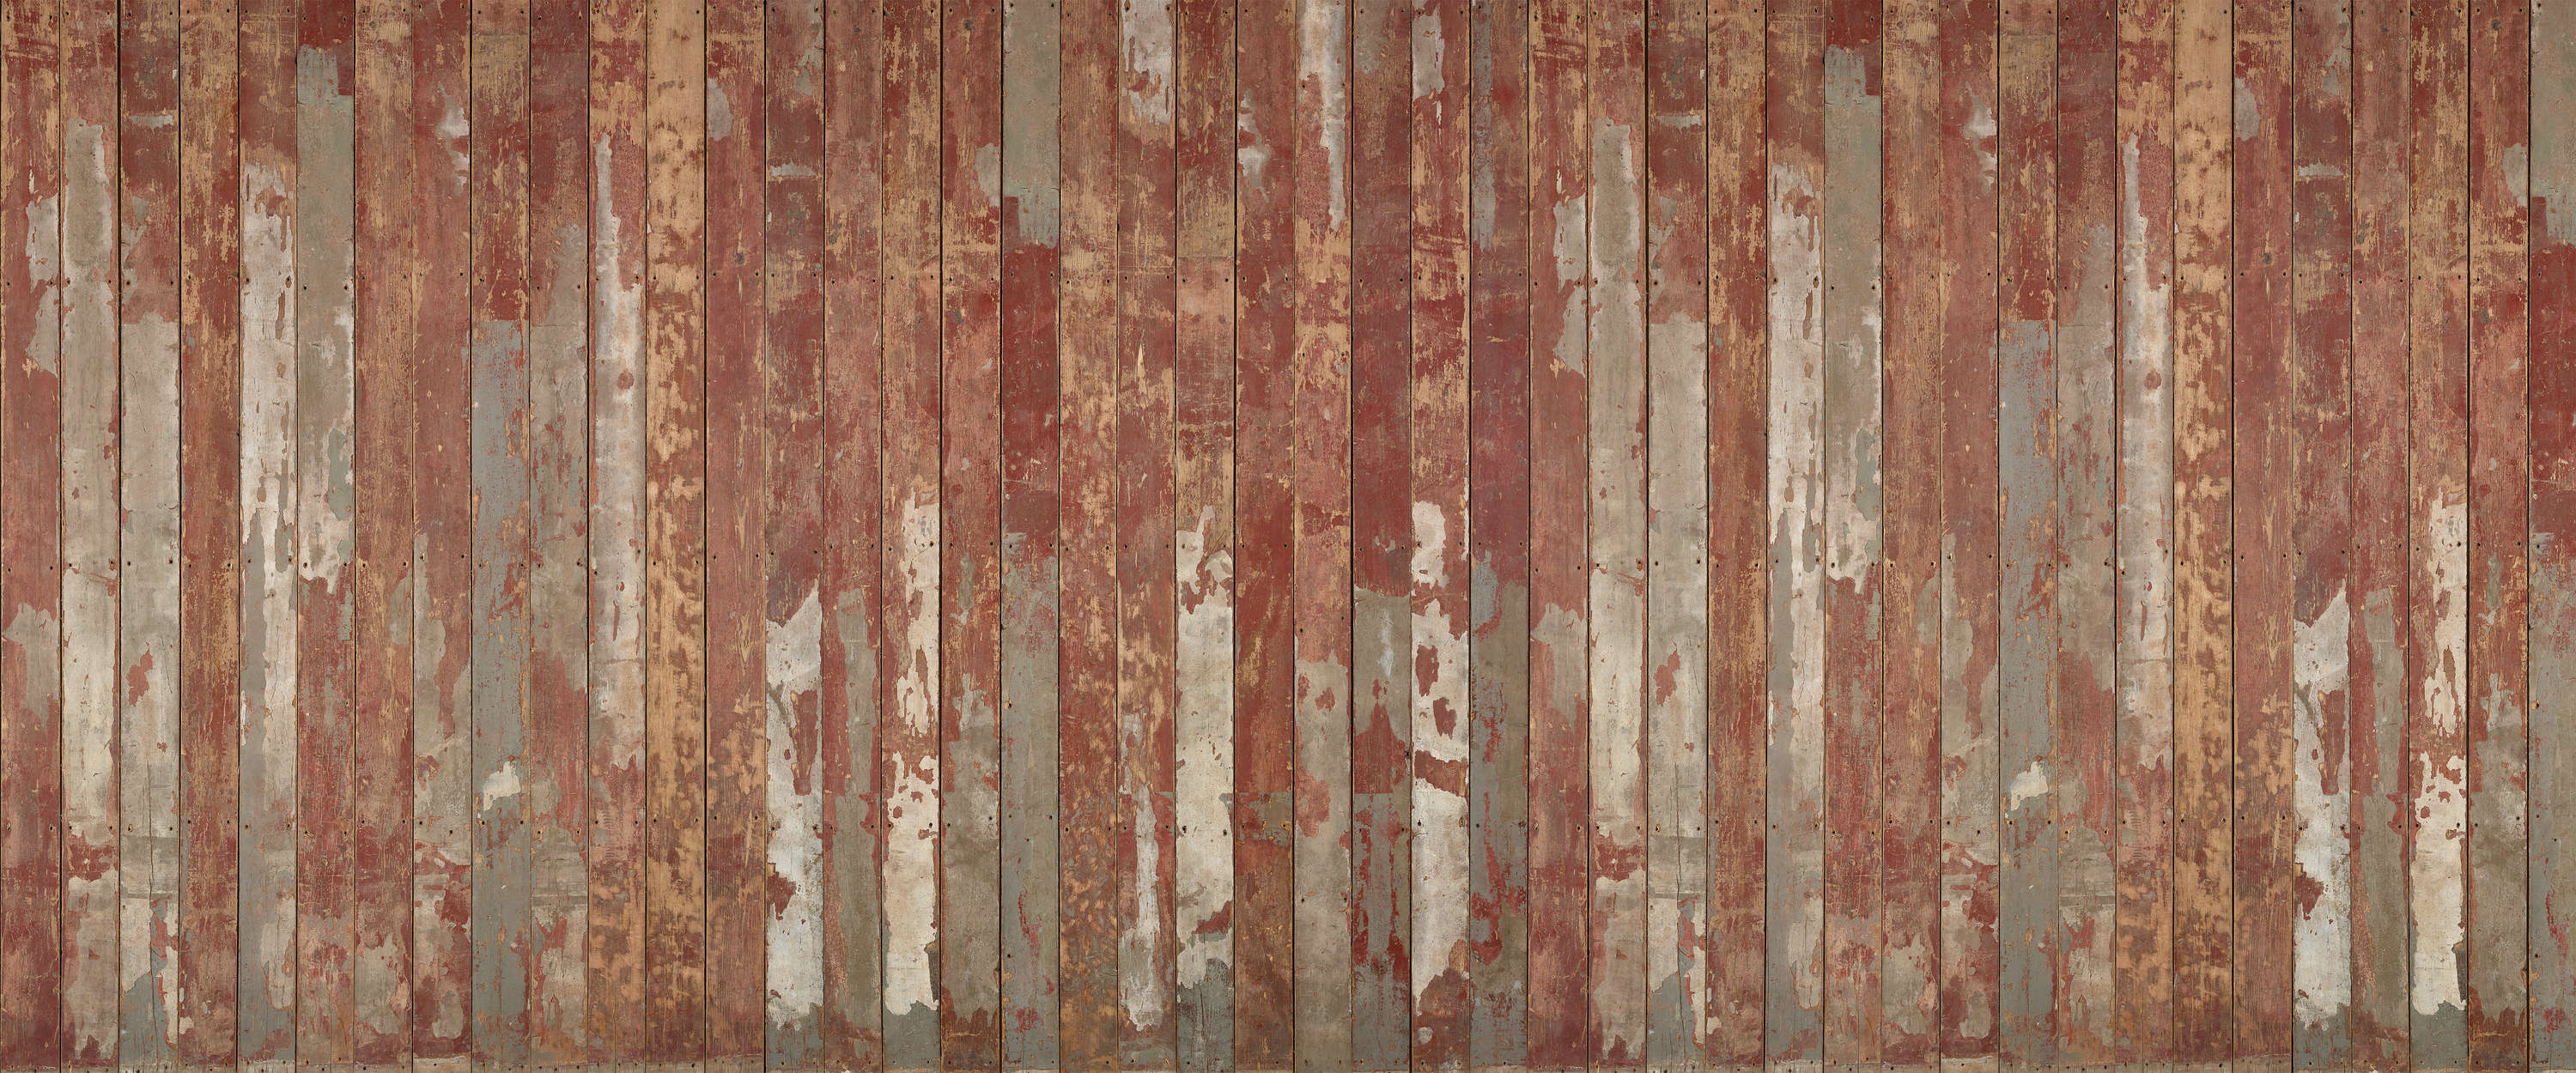             Fototapete Bretterwand rustikal mit vintage Holzoptik
        